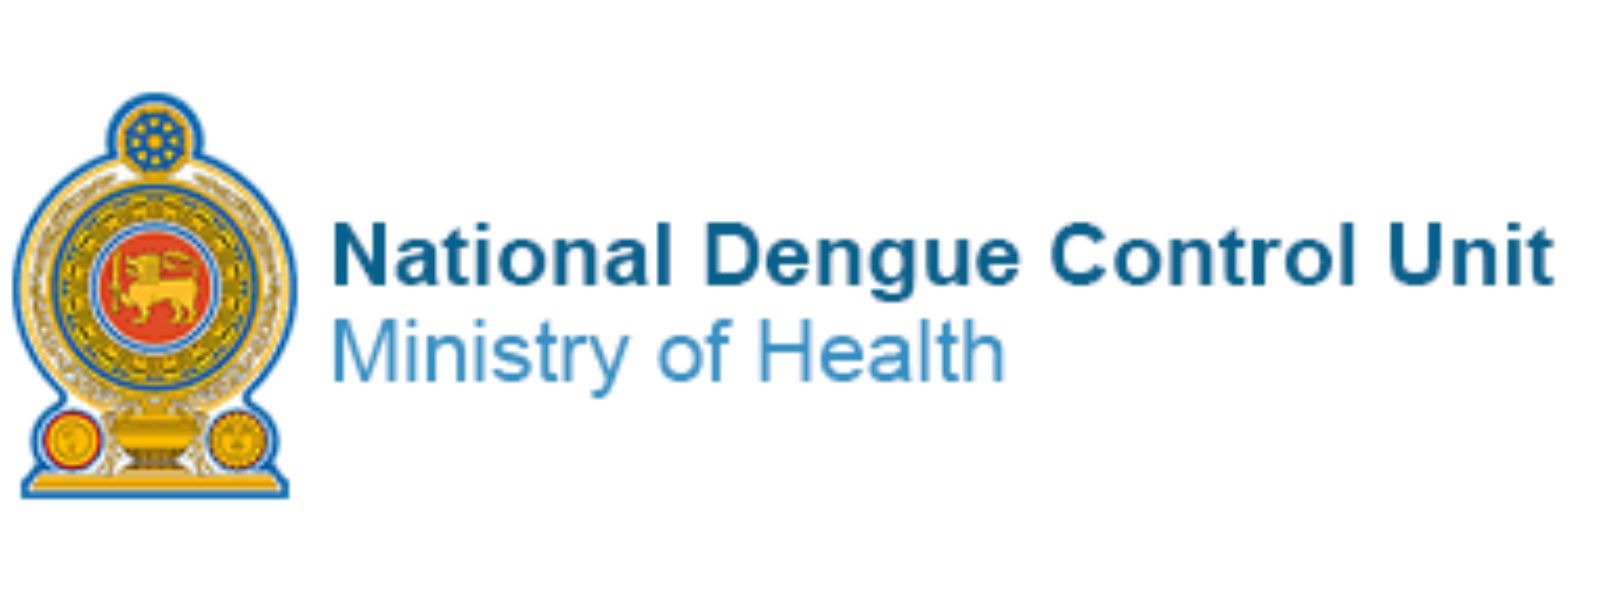 Increase in dengue - NDCU reports